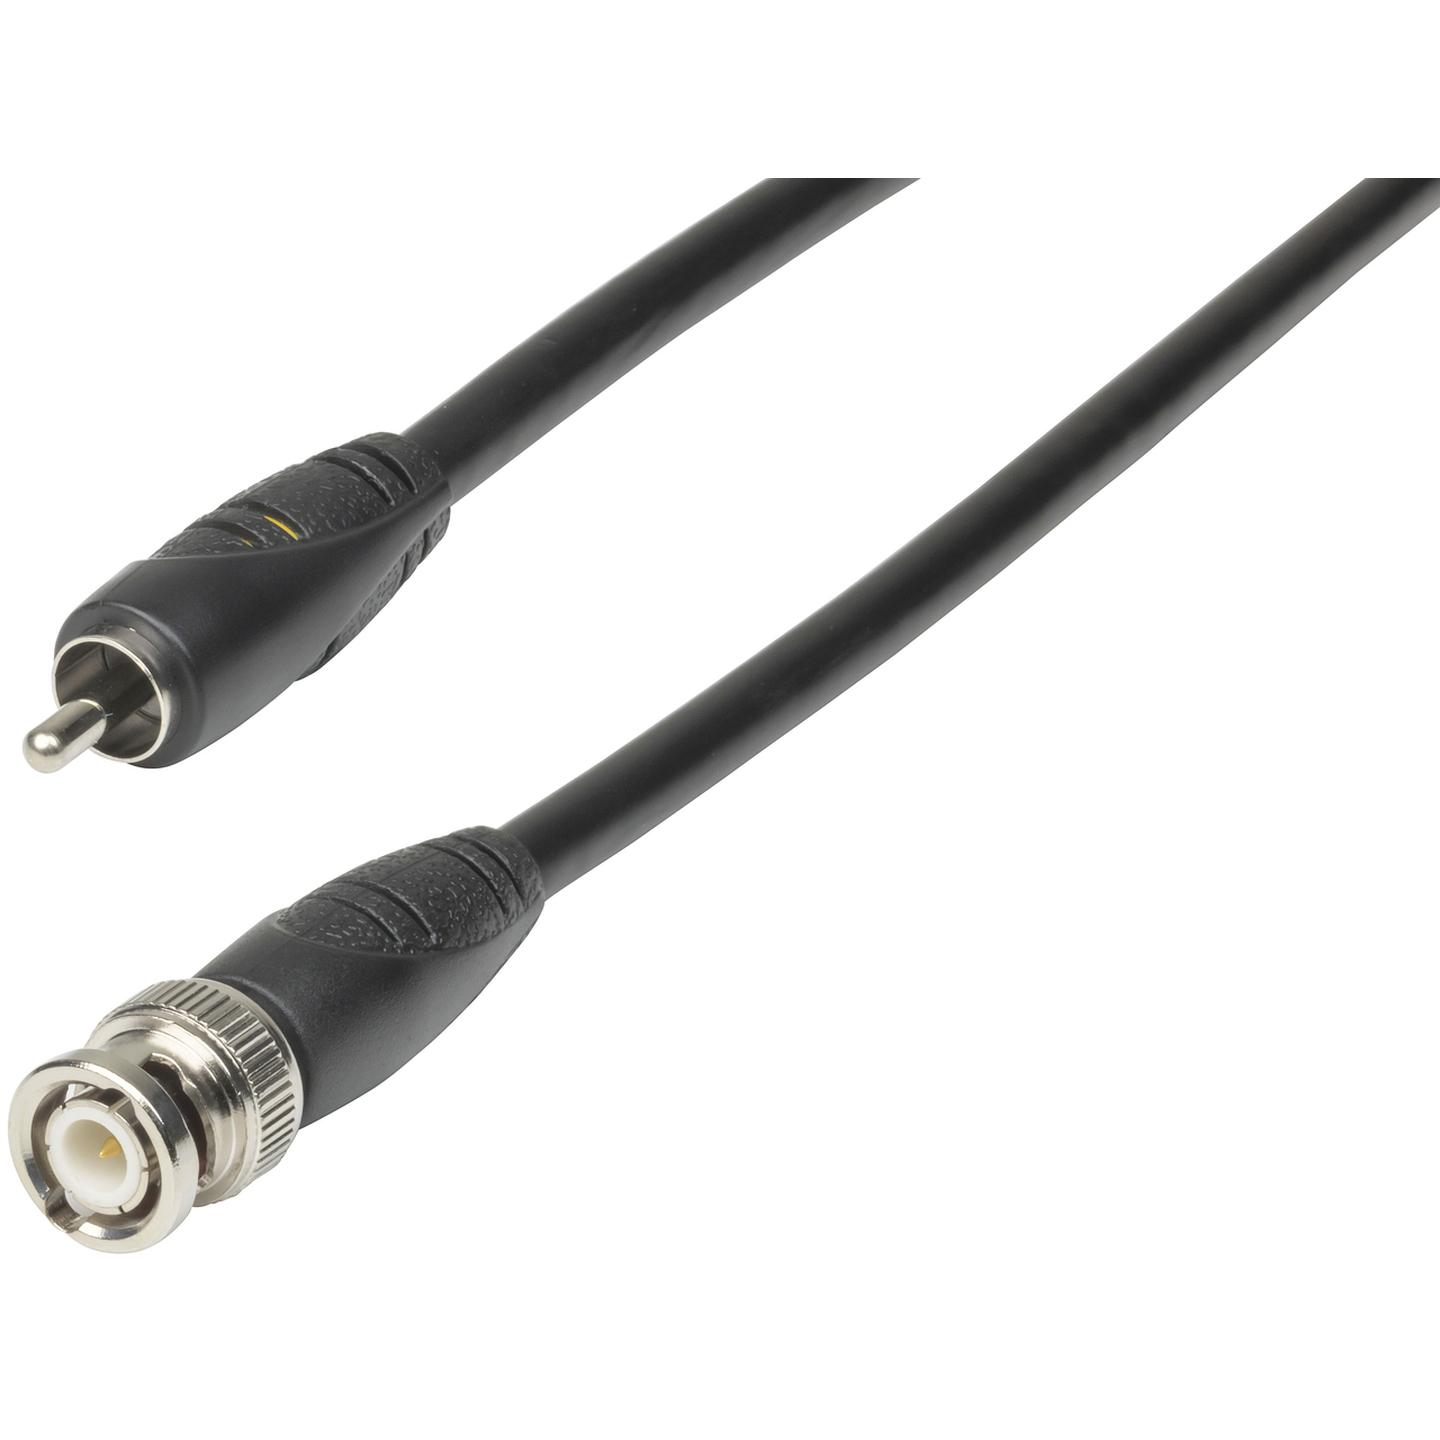 RCA Plug to BNC Plug Cable - 1.5m